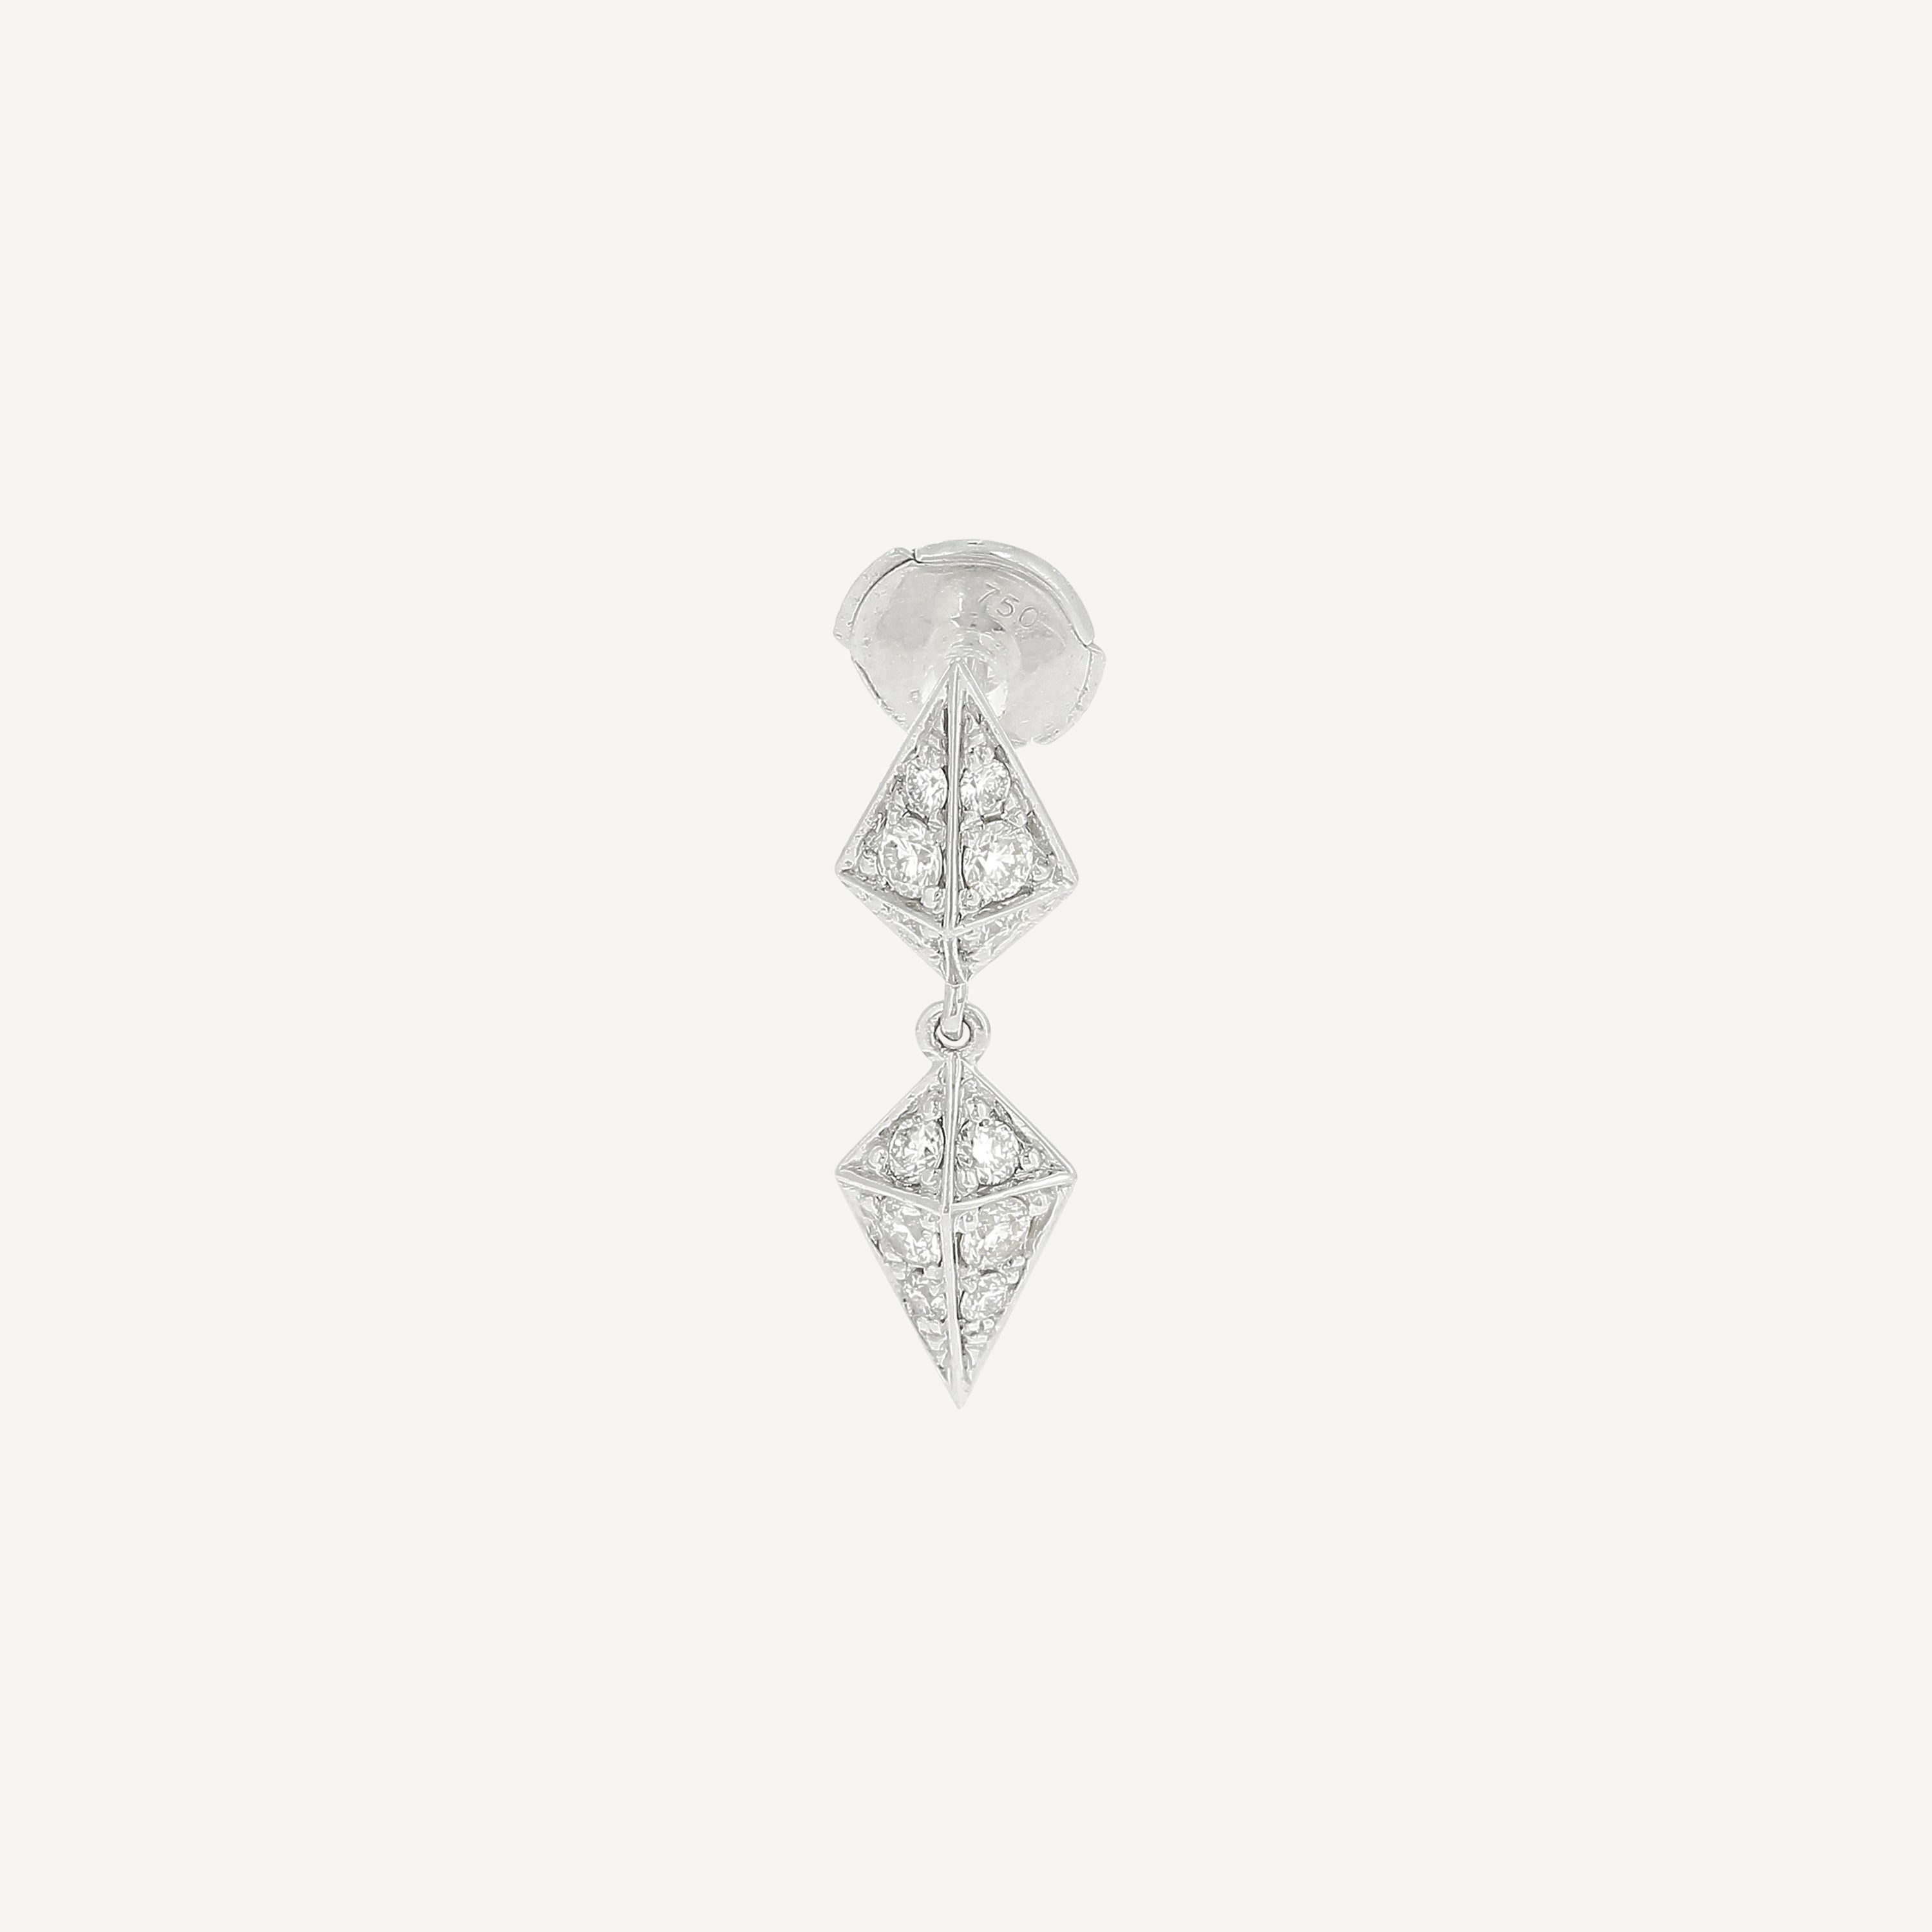 Rockaway Diamond and Silver Earring